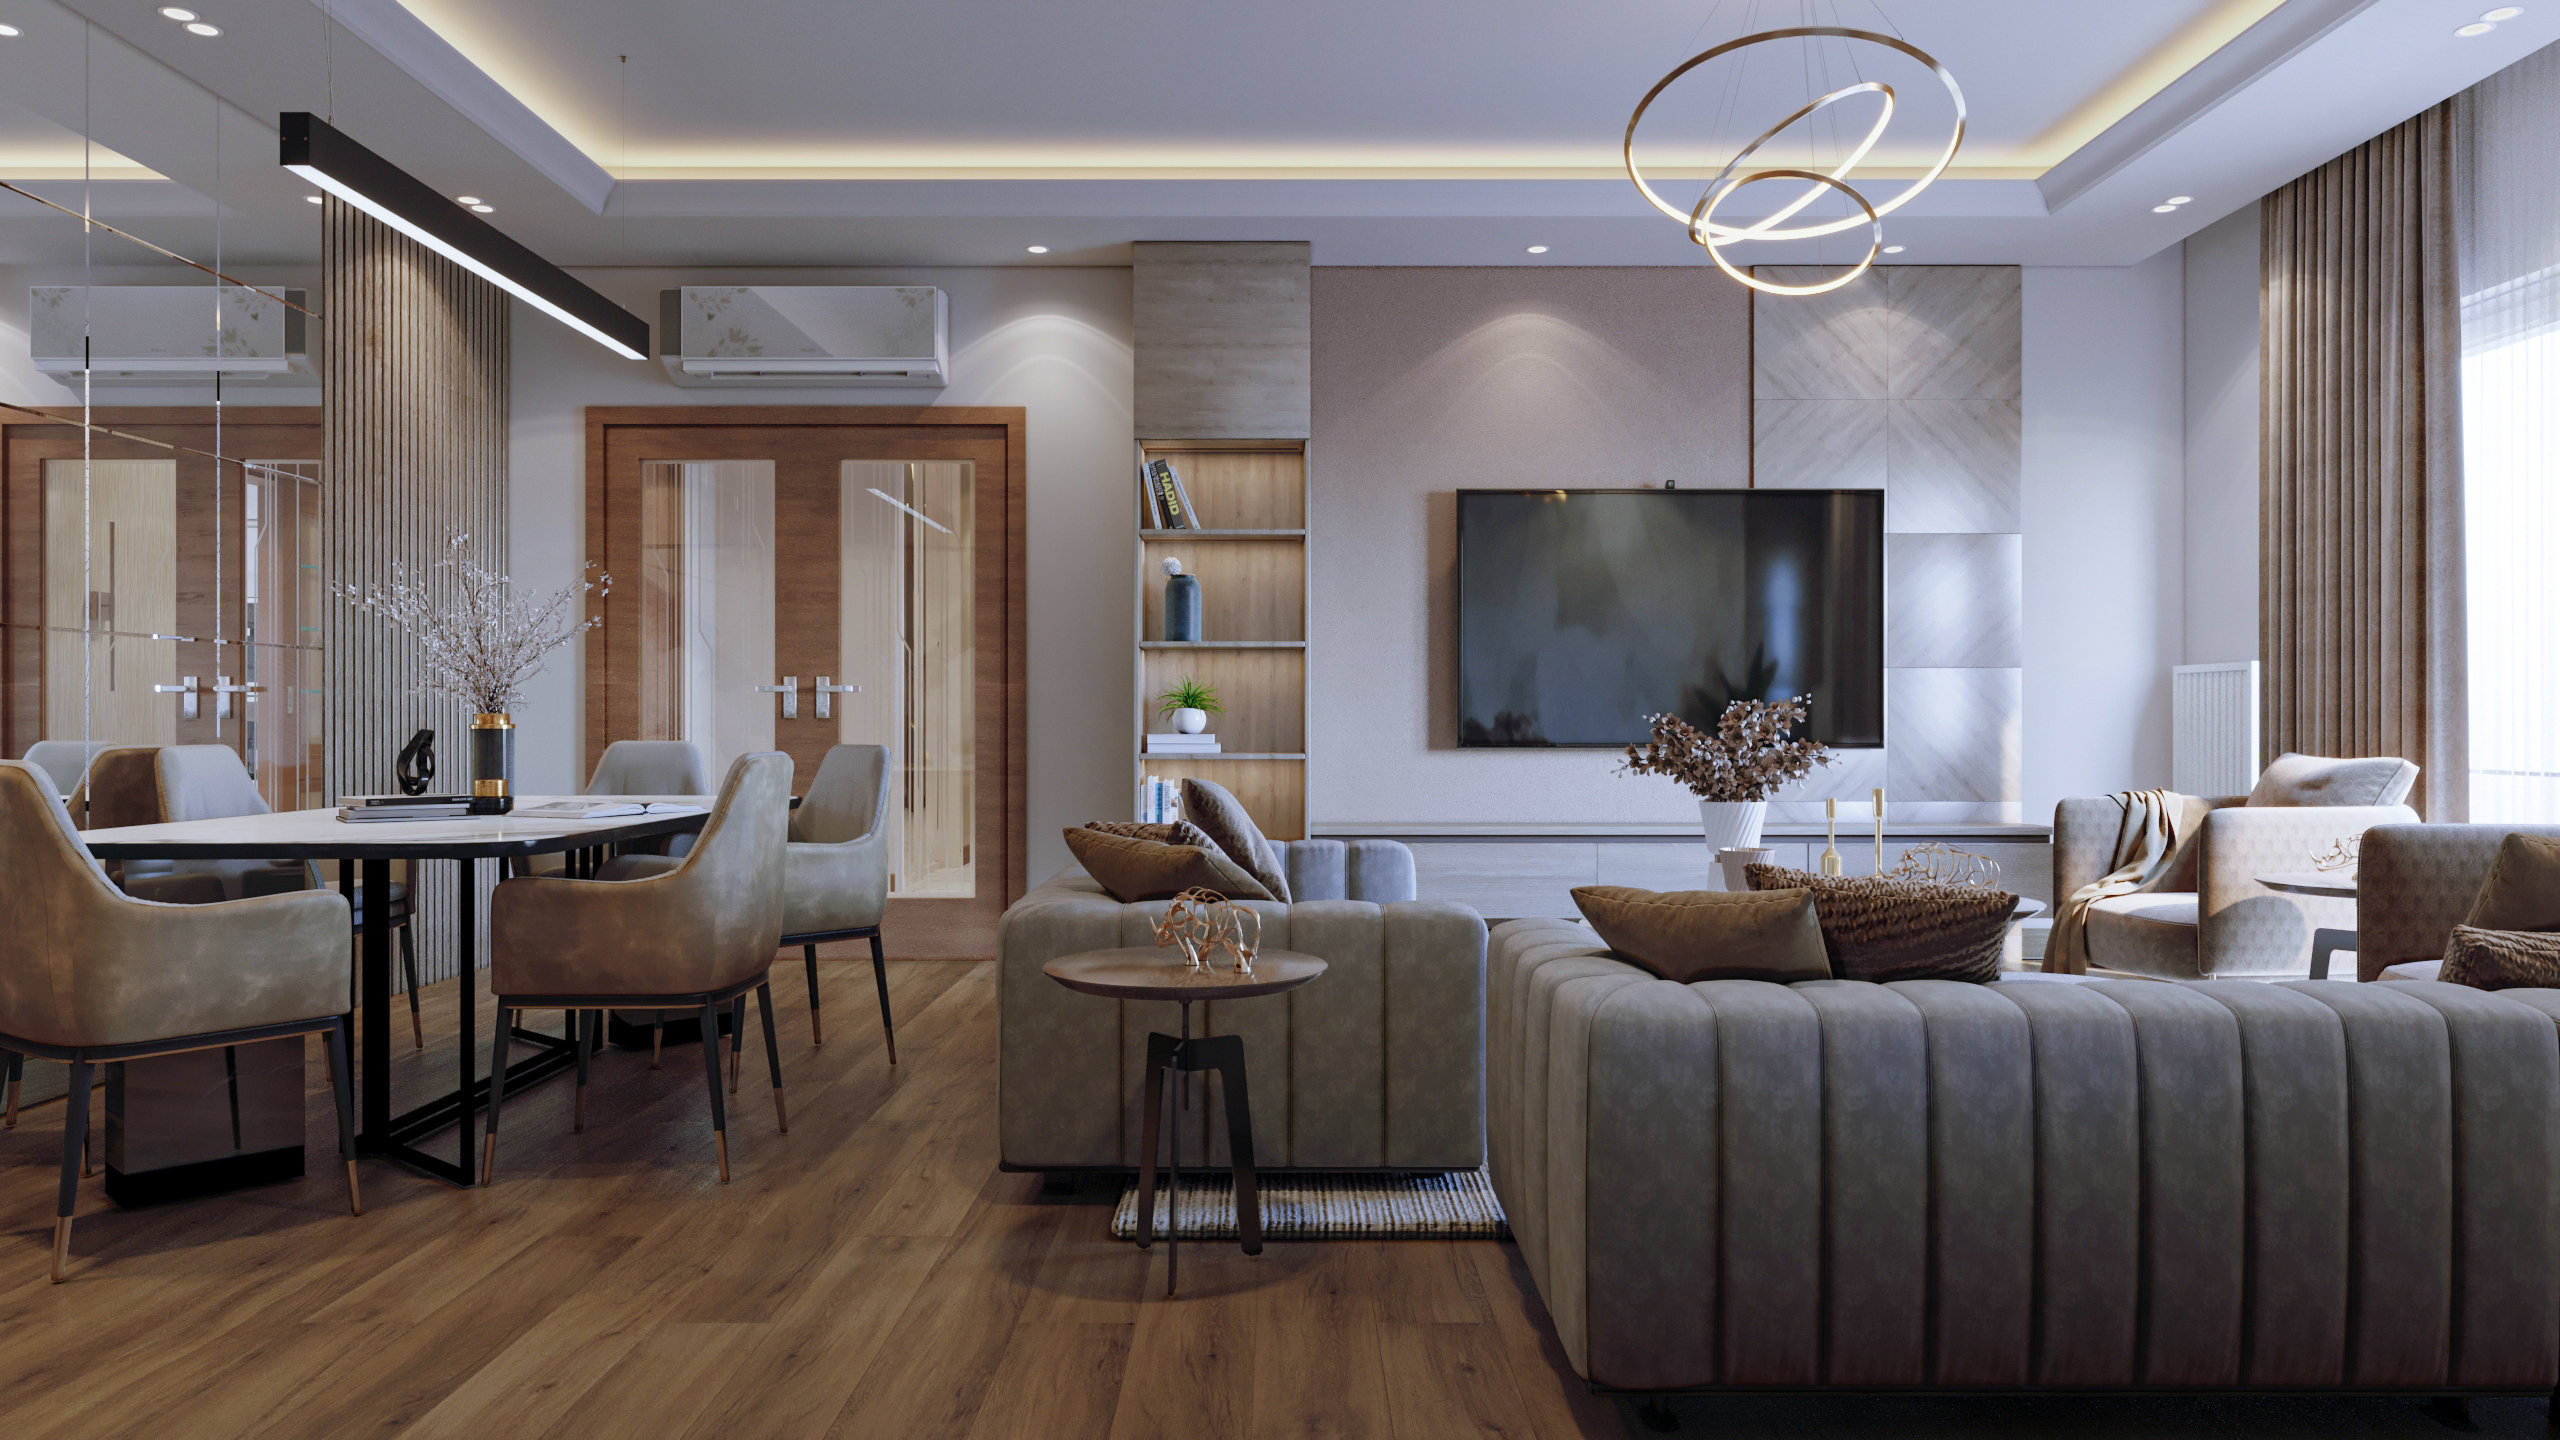 Interior design for a 420 m² private villa in Turkey, Sapanca, 2019